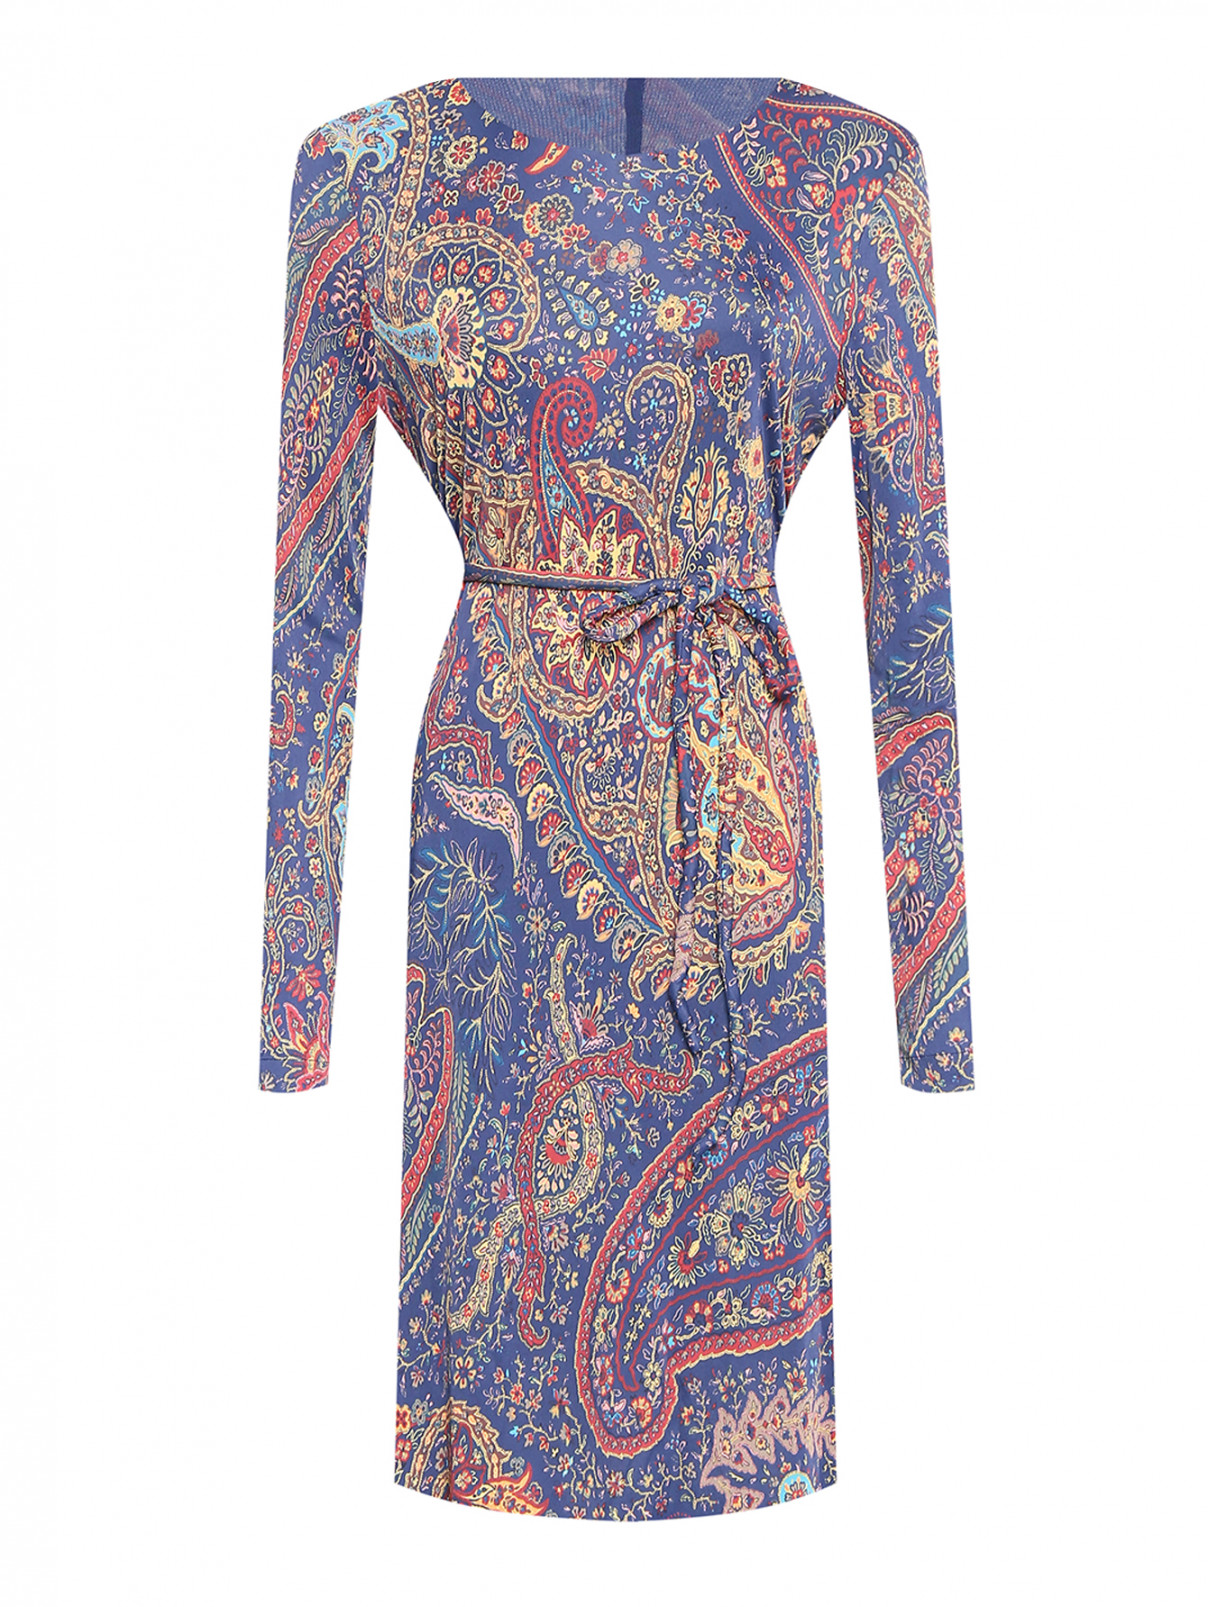 Платье из вискозы с поясом и узорм Etro  –  Общий вид  – Цвет:  Синий